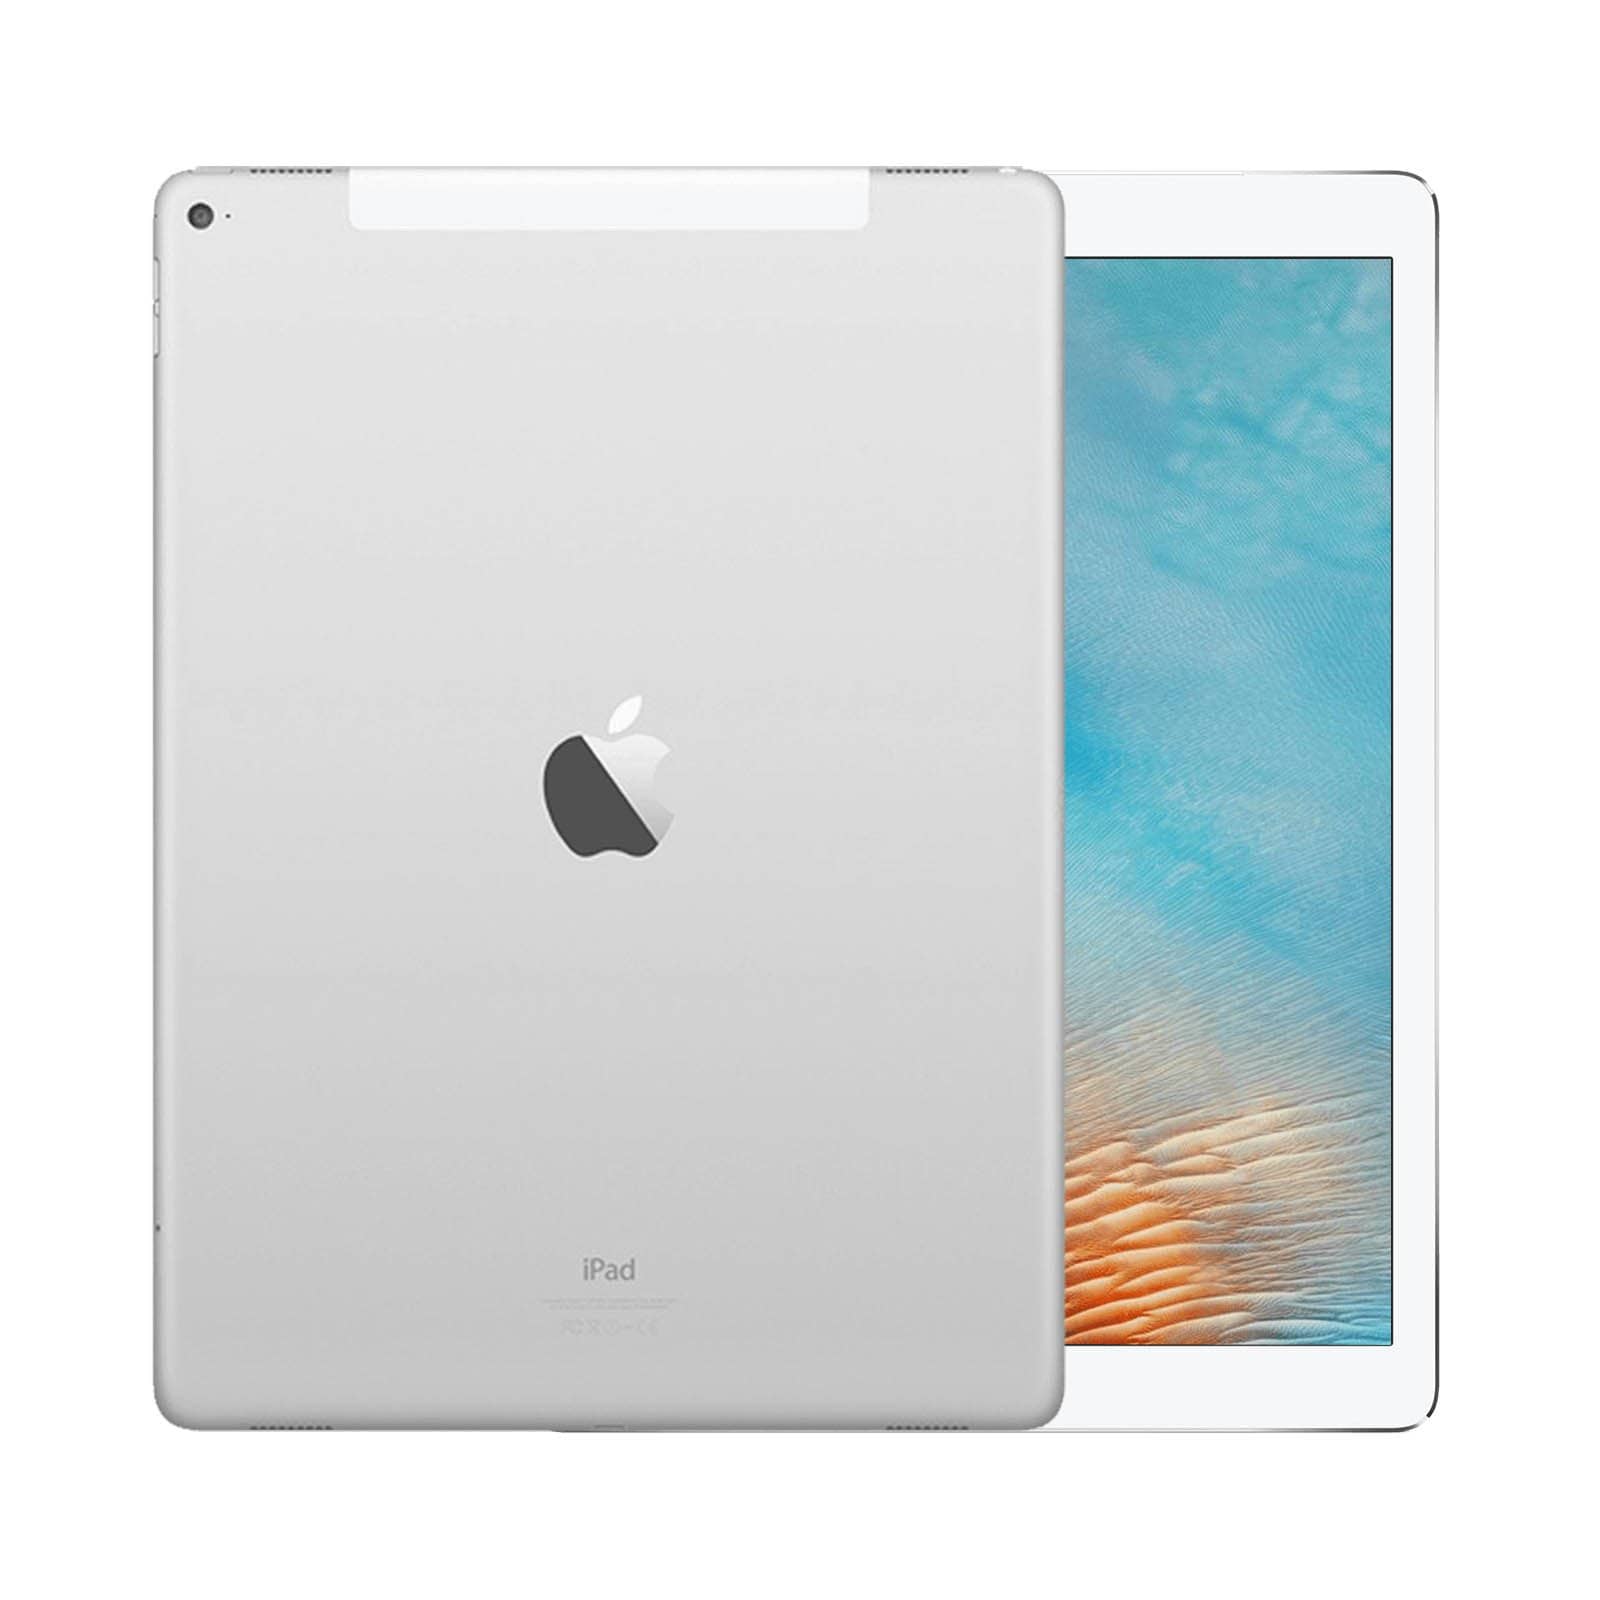 iPad Pro 12.9 Inch 2nd Gen 64GB Silver Good - WiFi 64GB Silver Good